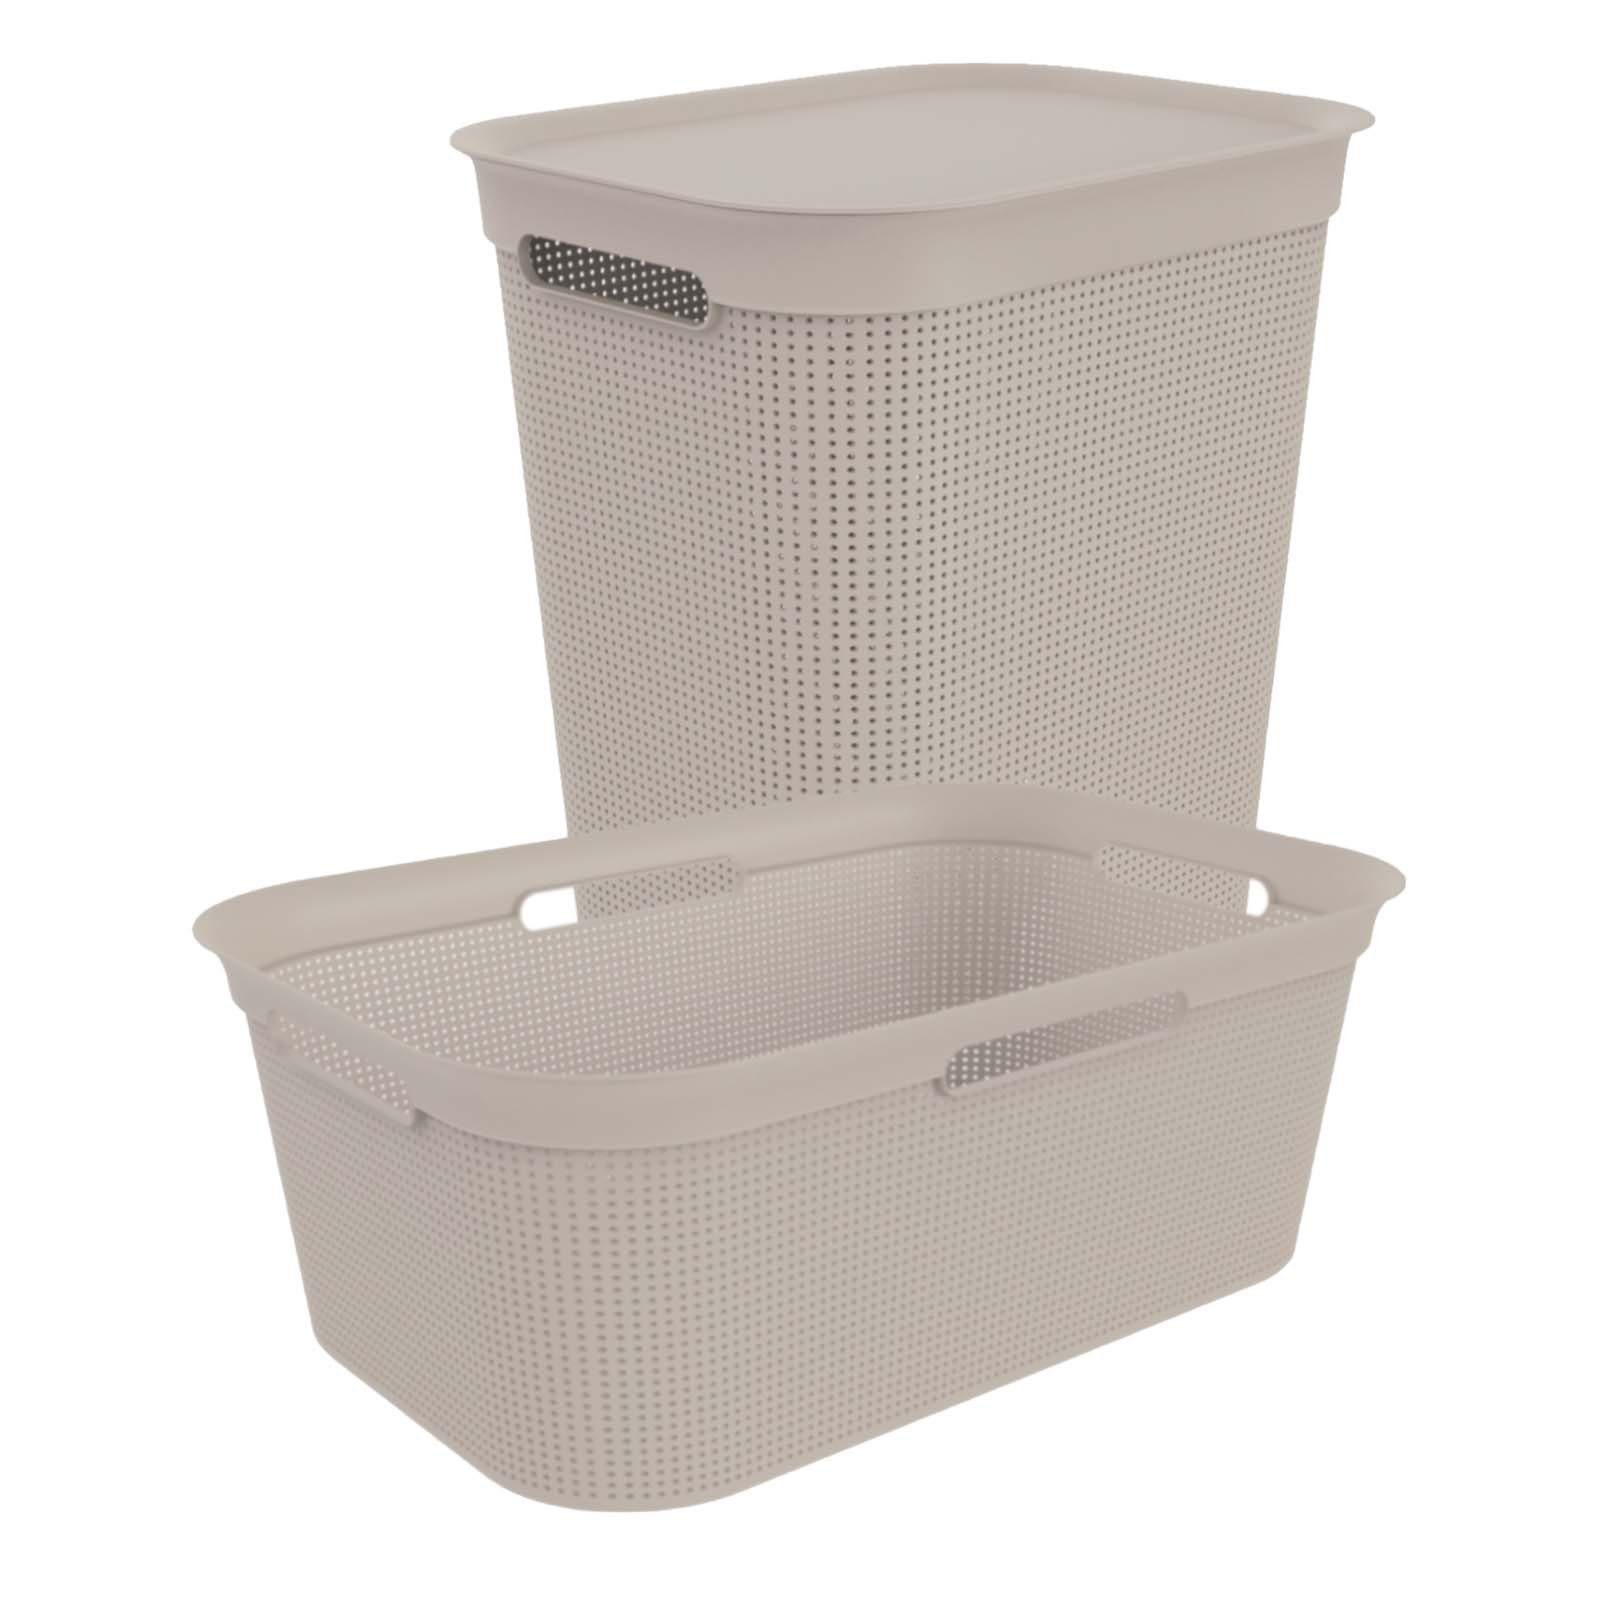 den innerhalb Brisen Cappuccino Luftzirkulation Wäschebox Wäsche, Rotho der ROTHO Löcher Seiten Wäschekorb Set an ermöglicht